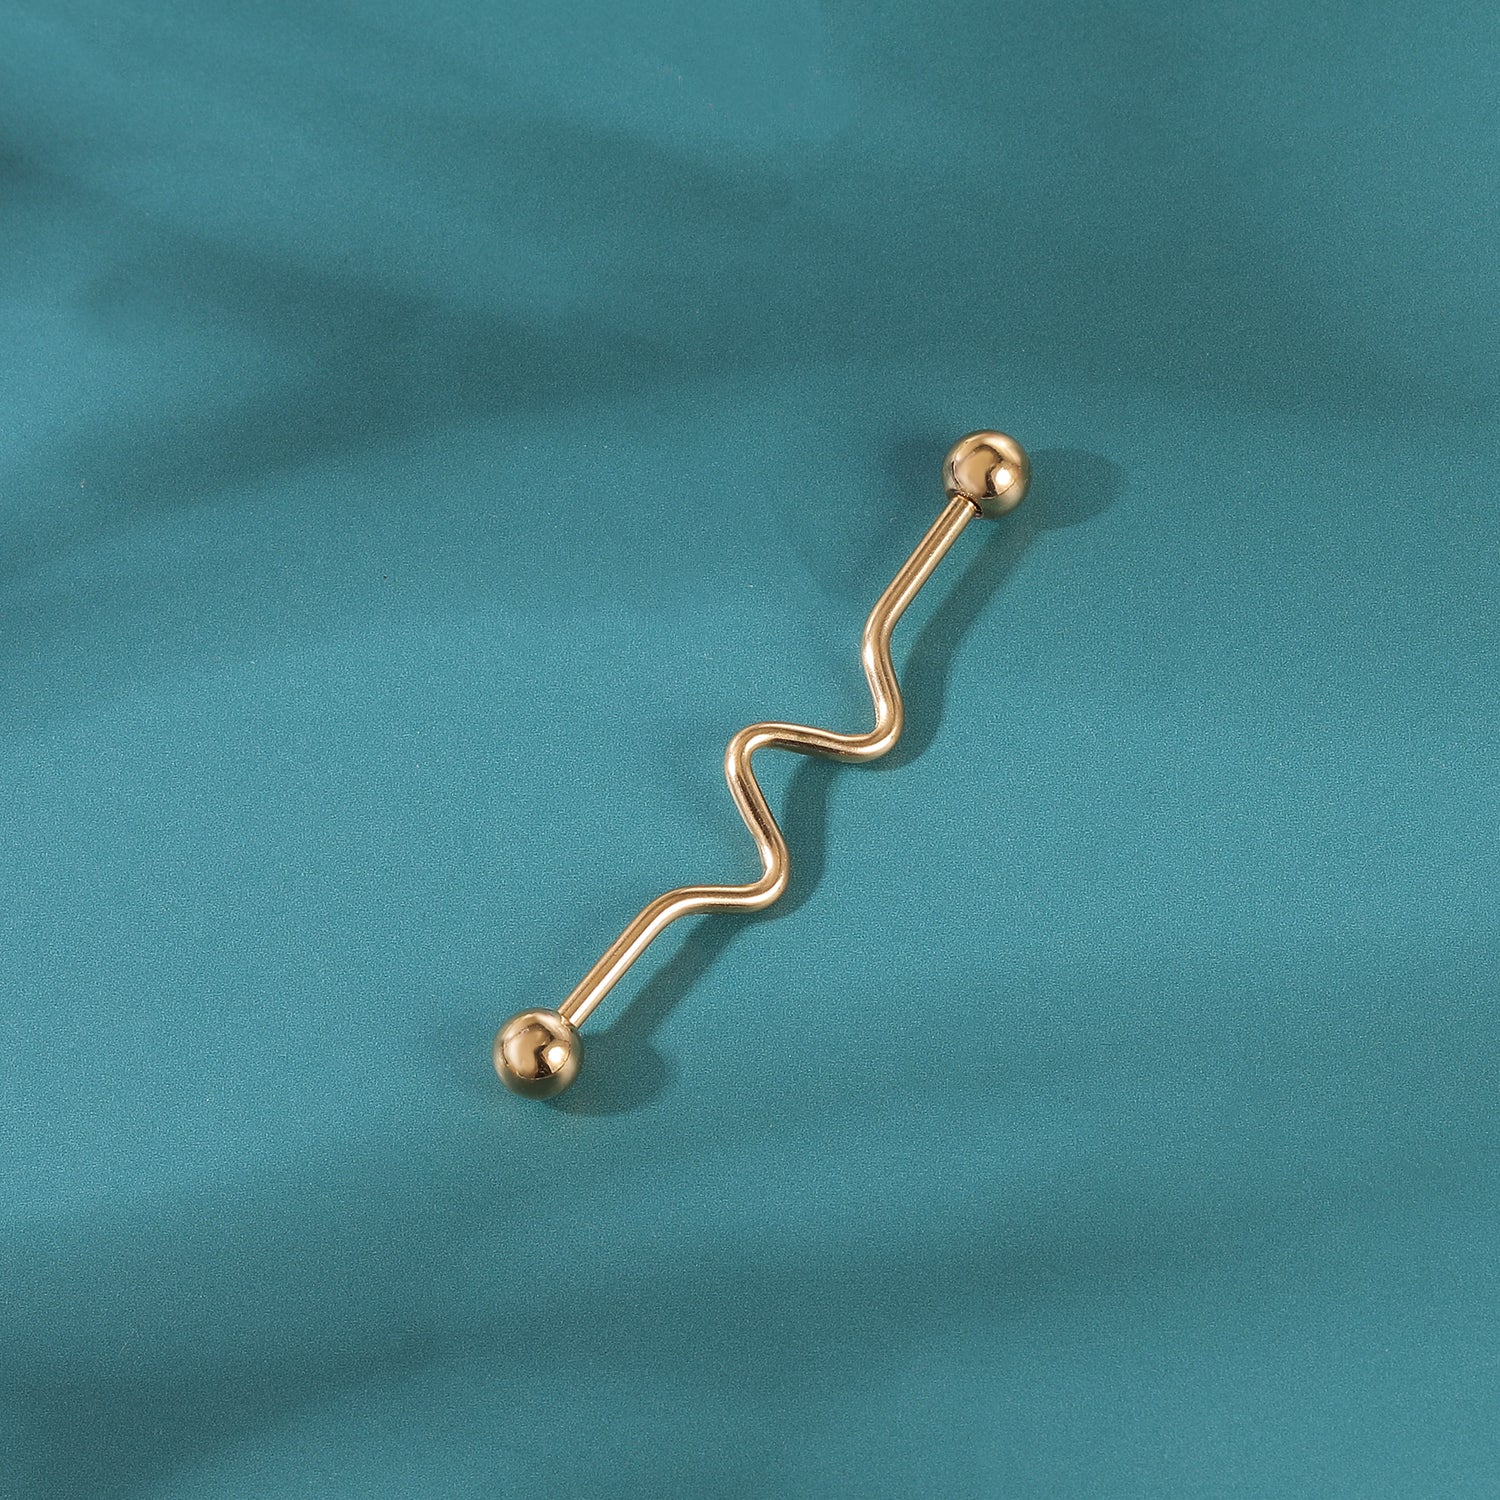 14g-wave-industrial-barbell-earring-ball-ear-helix-piercings